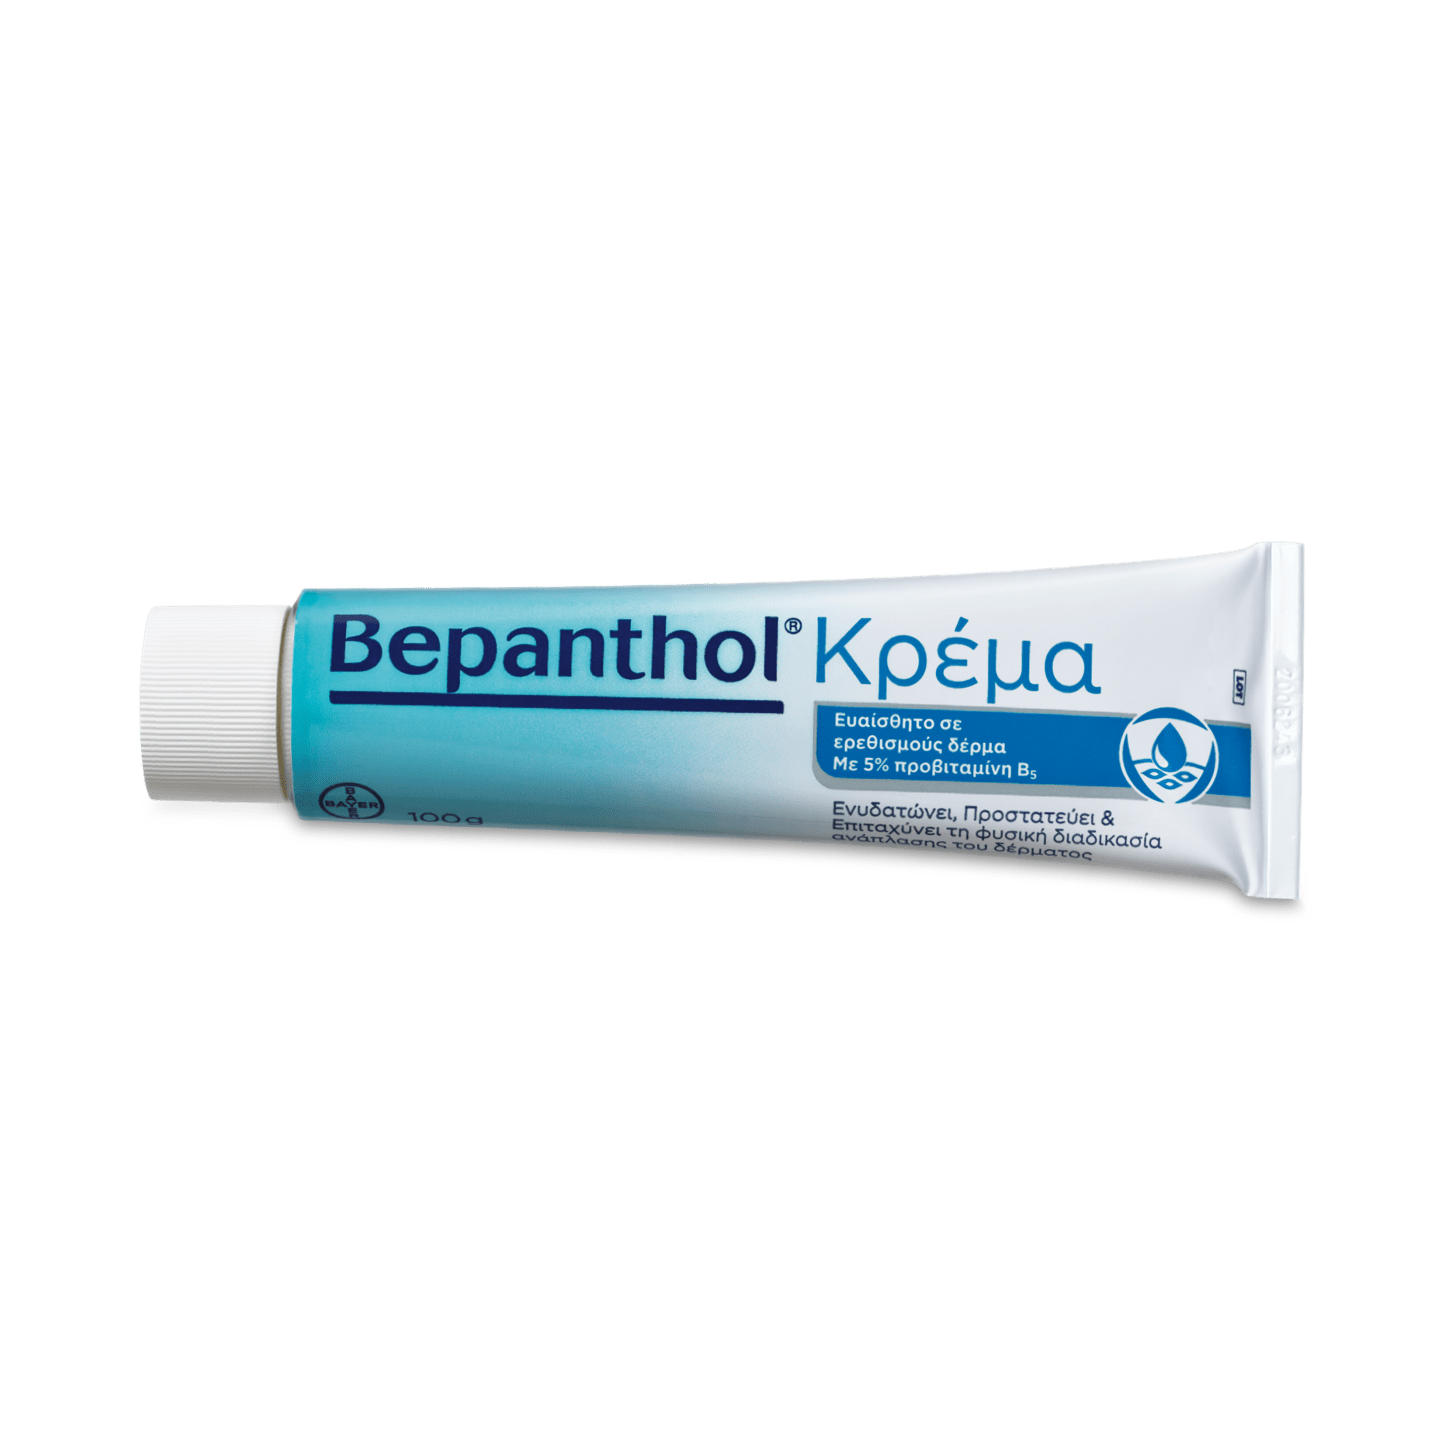 Κρέμα Bepanthol